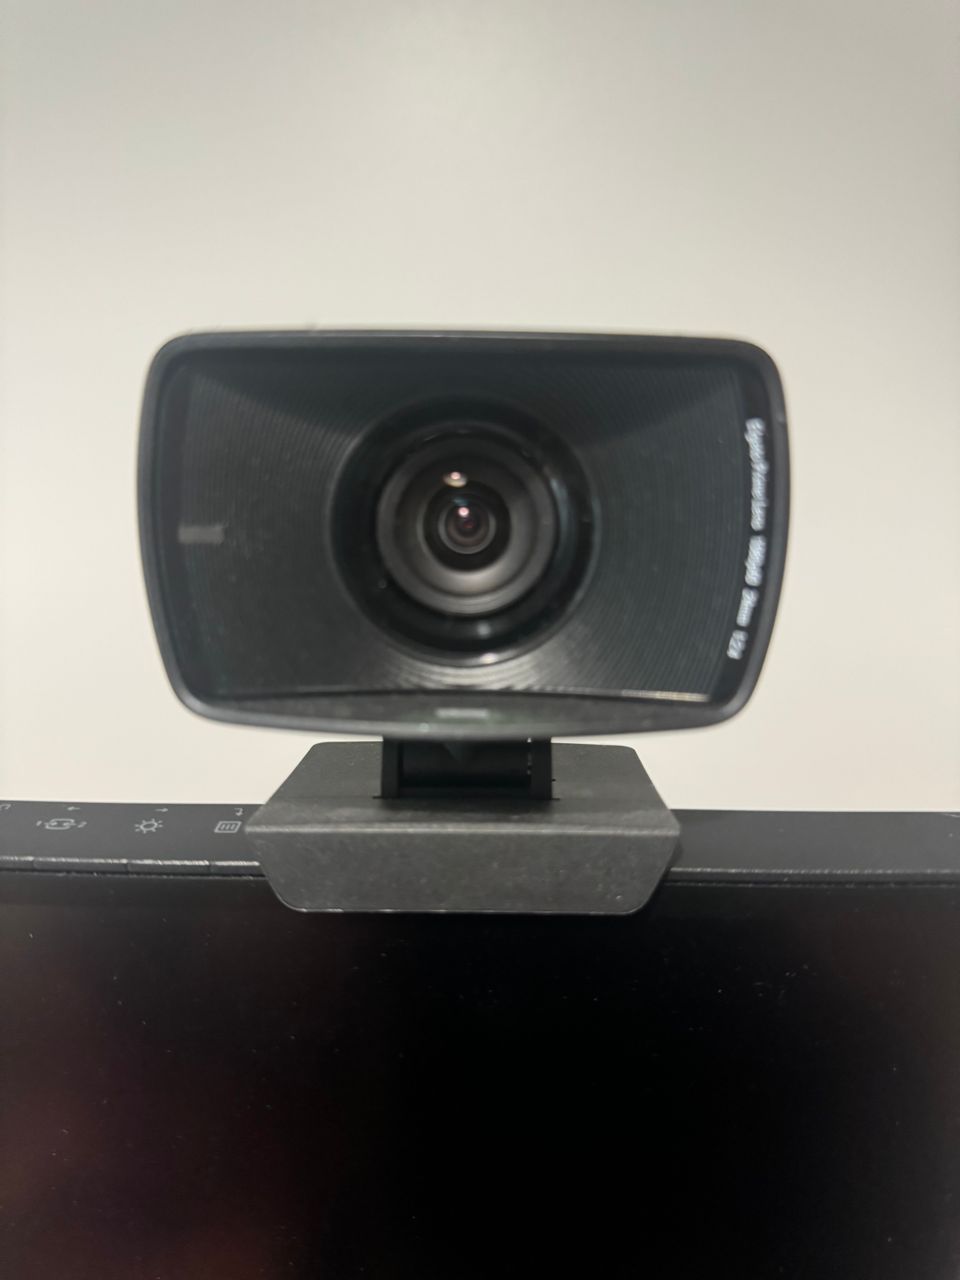 Elgato facecam webkamera